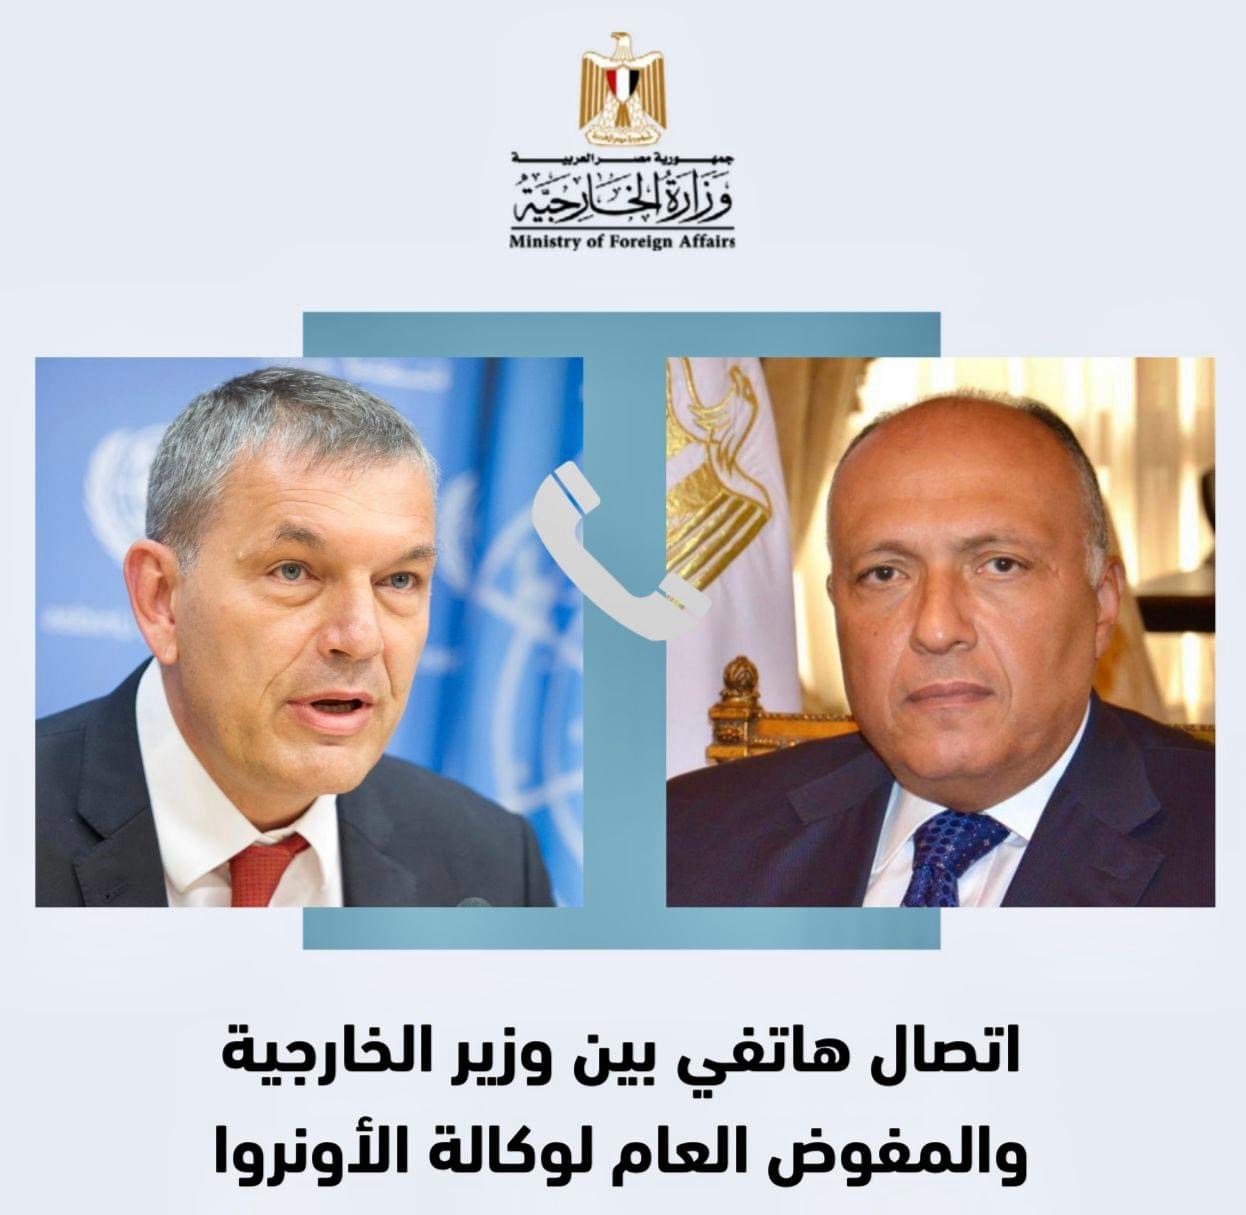 في اتصال هاتفي: وزير الخارجية يؤكد للمفوض العام للأونروا دعم مصر الكامل لدور الوكالة فيما تواجهه من تحديات